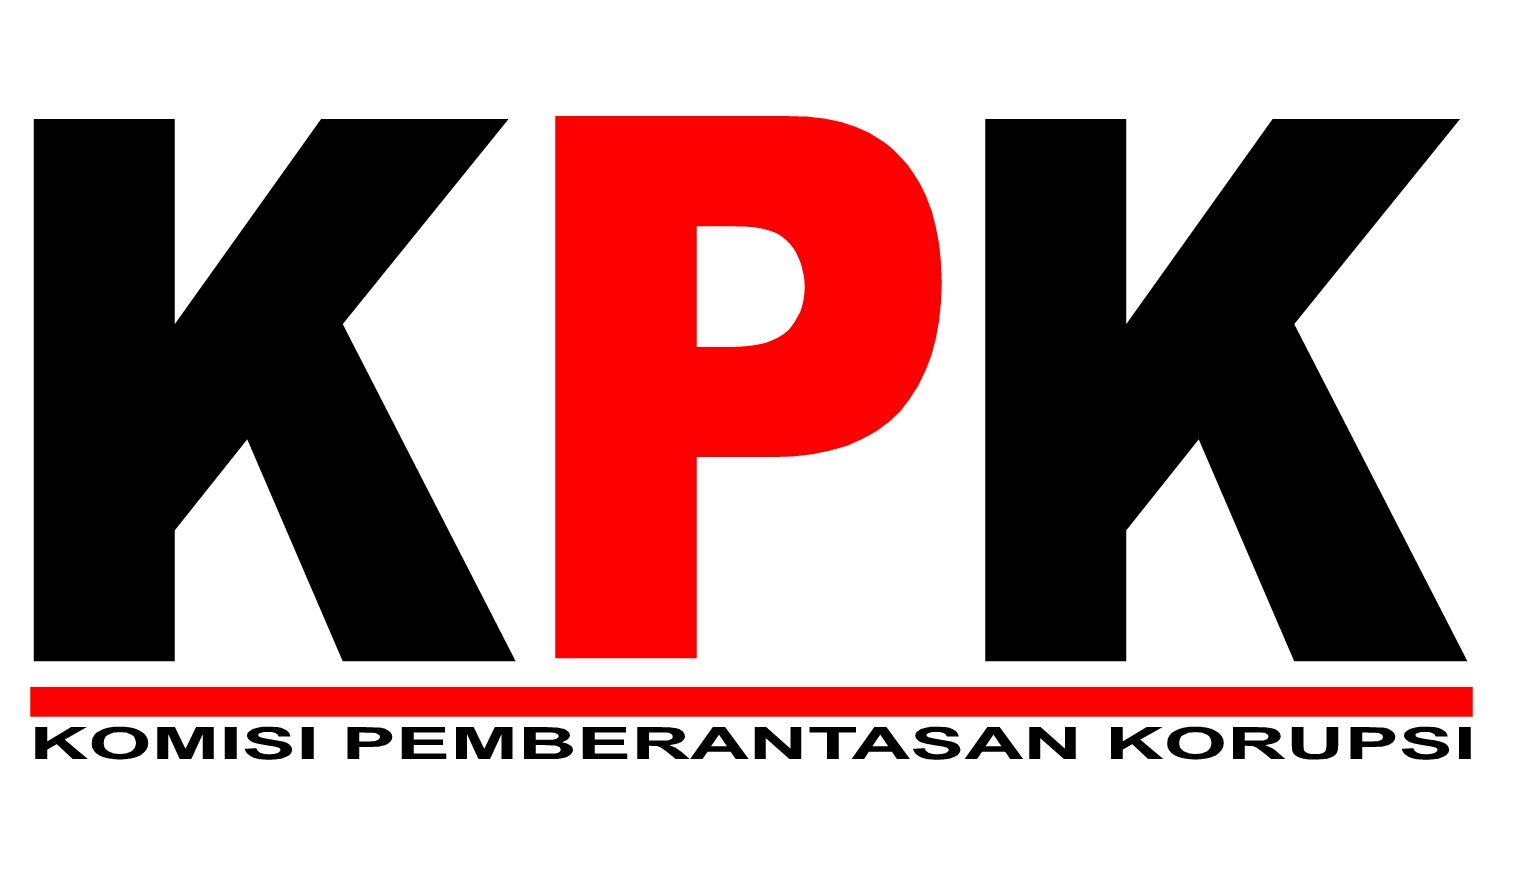 Adnan Pandu Wakil Ketua KPK Sempat Menanyakan ke Suparman Sejauh Mana Kenal Dengan TW